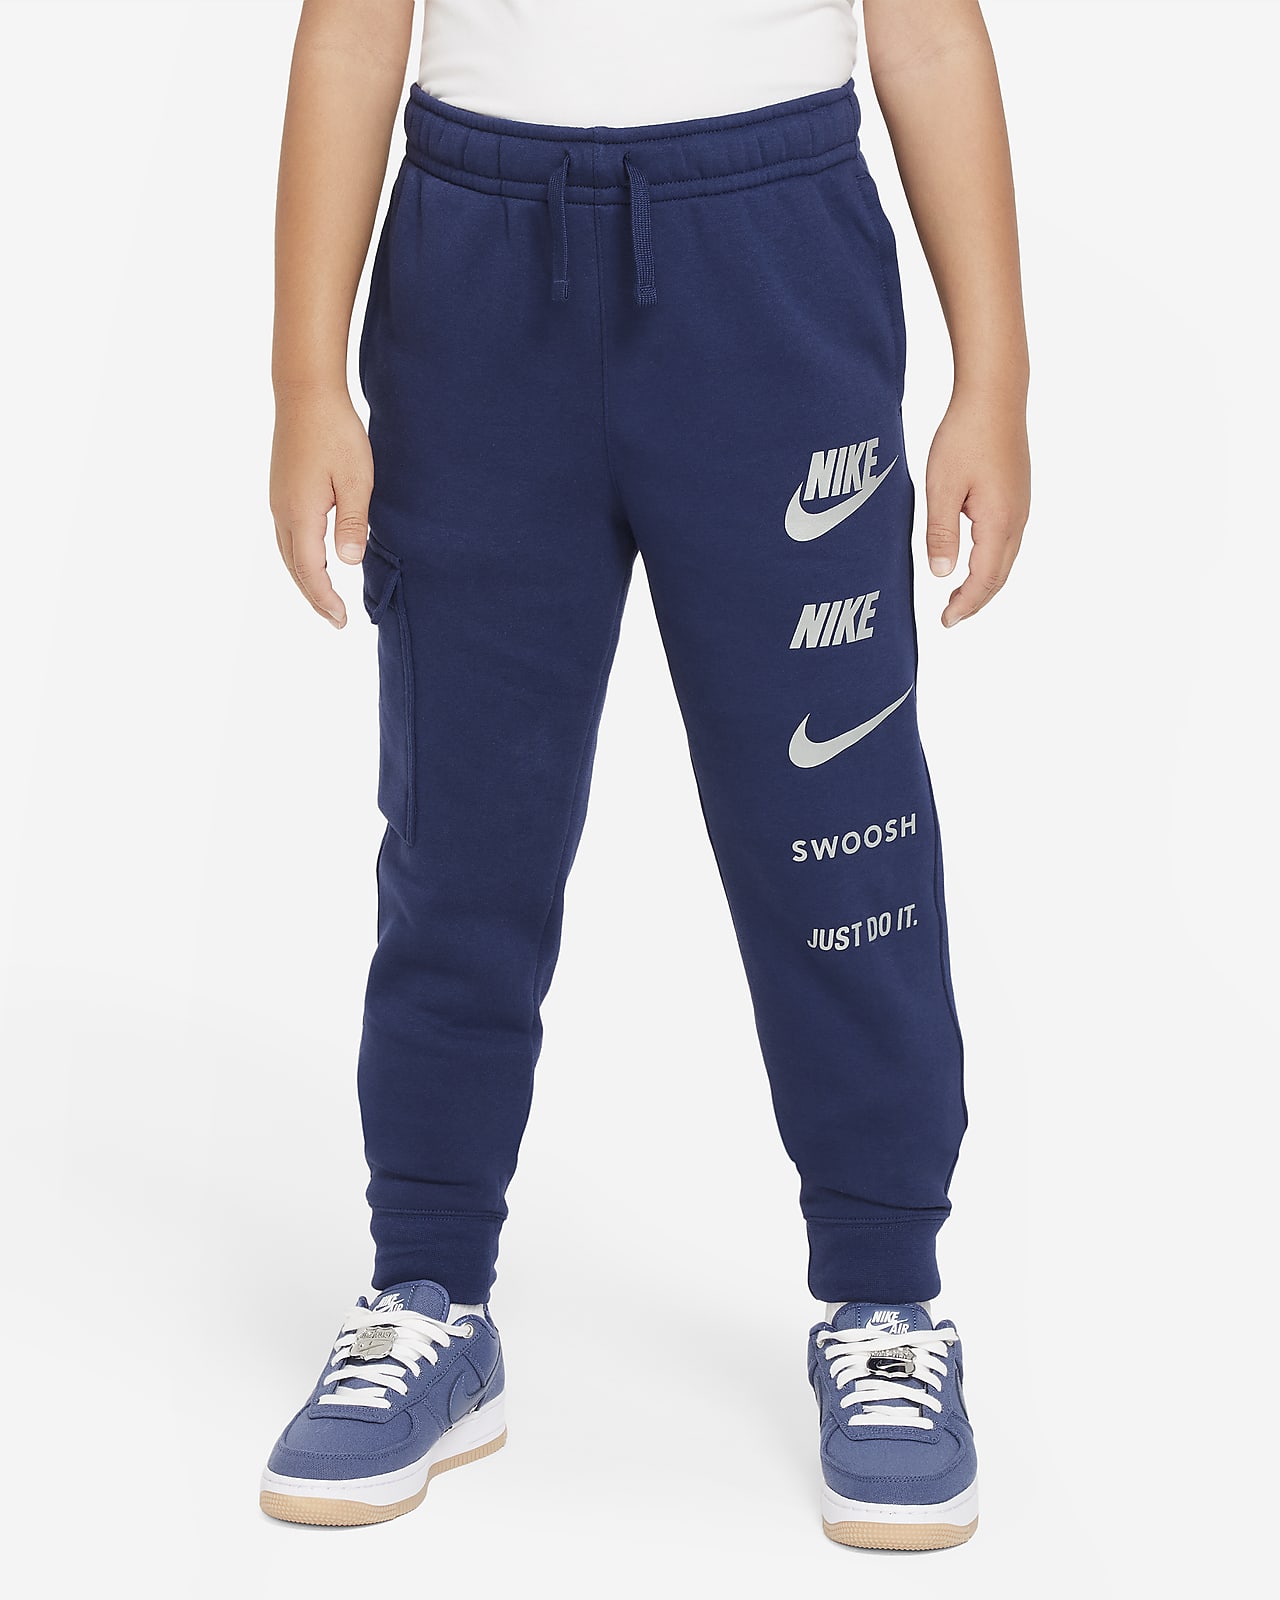 Nike Sportswear Older Kids' (Boys') Fleece Cargo Trousers